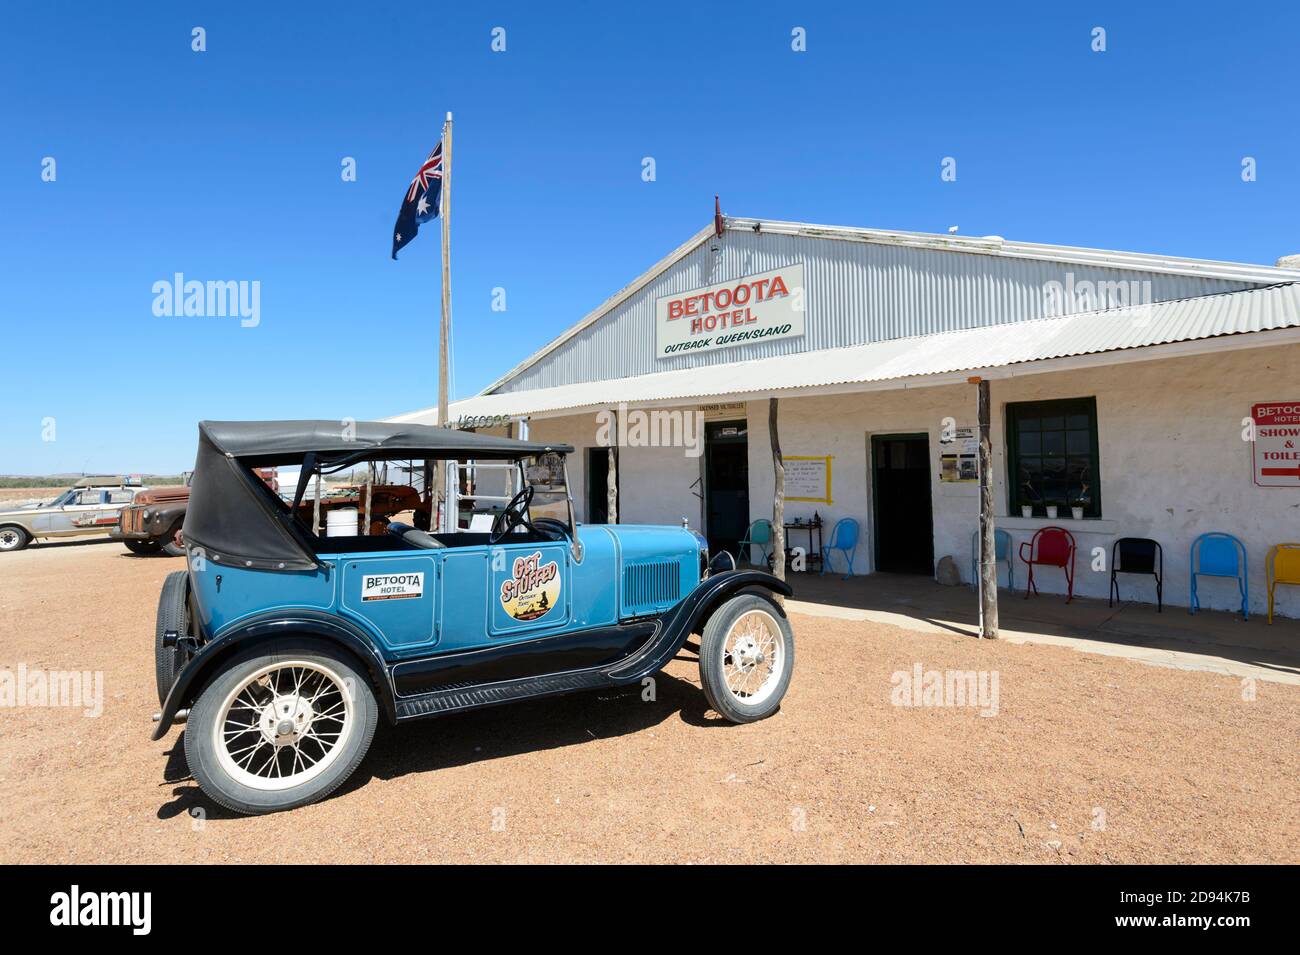 Ein Oldtimer vor dem Betoota Hotel, einem alten bekannten Outback Pub in der Geisterstadt Betoota, Diamantina Shire, Queensland, QLD, Australien Stockfoto